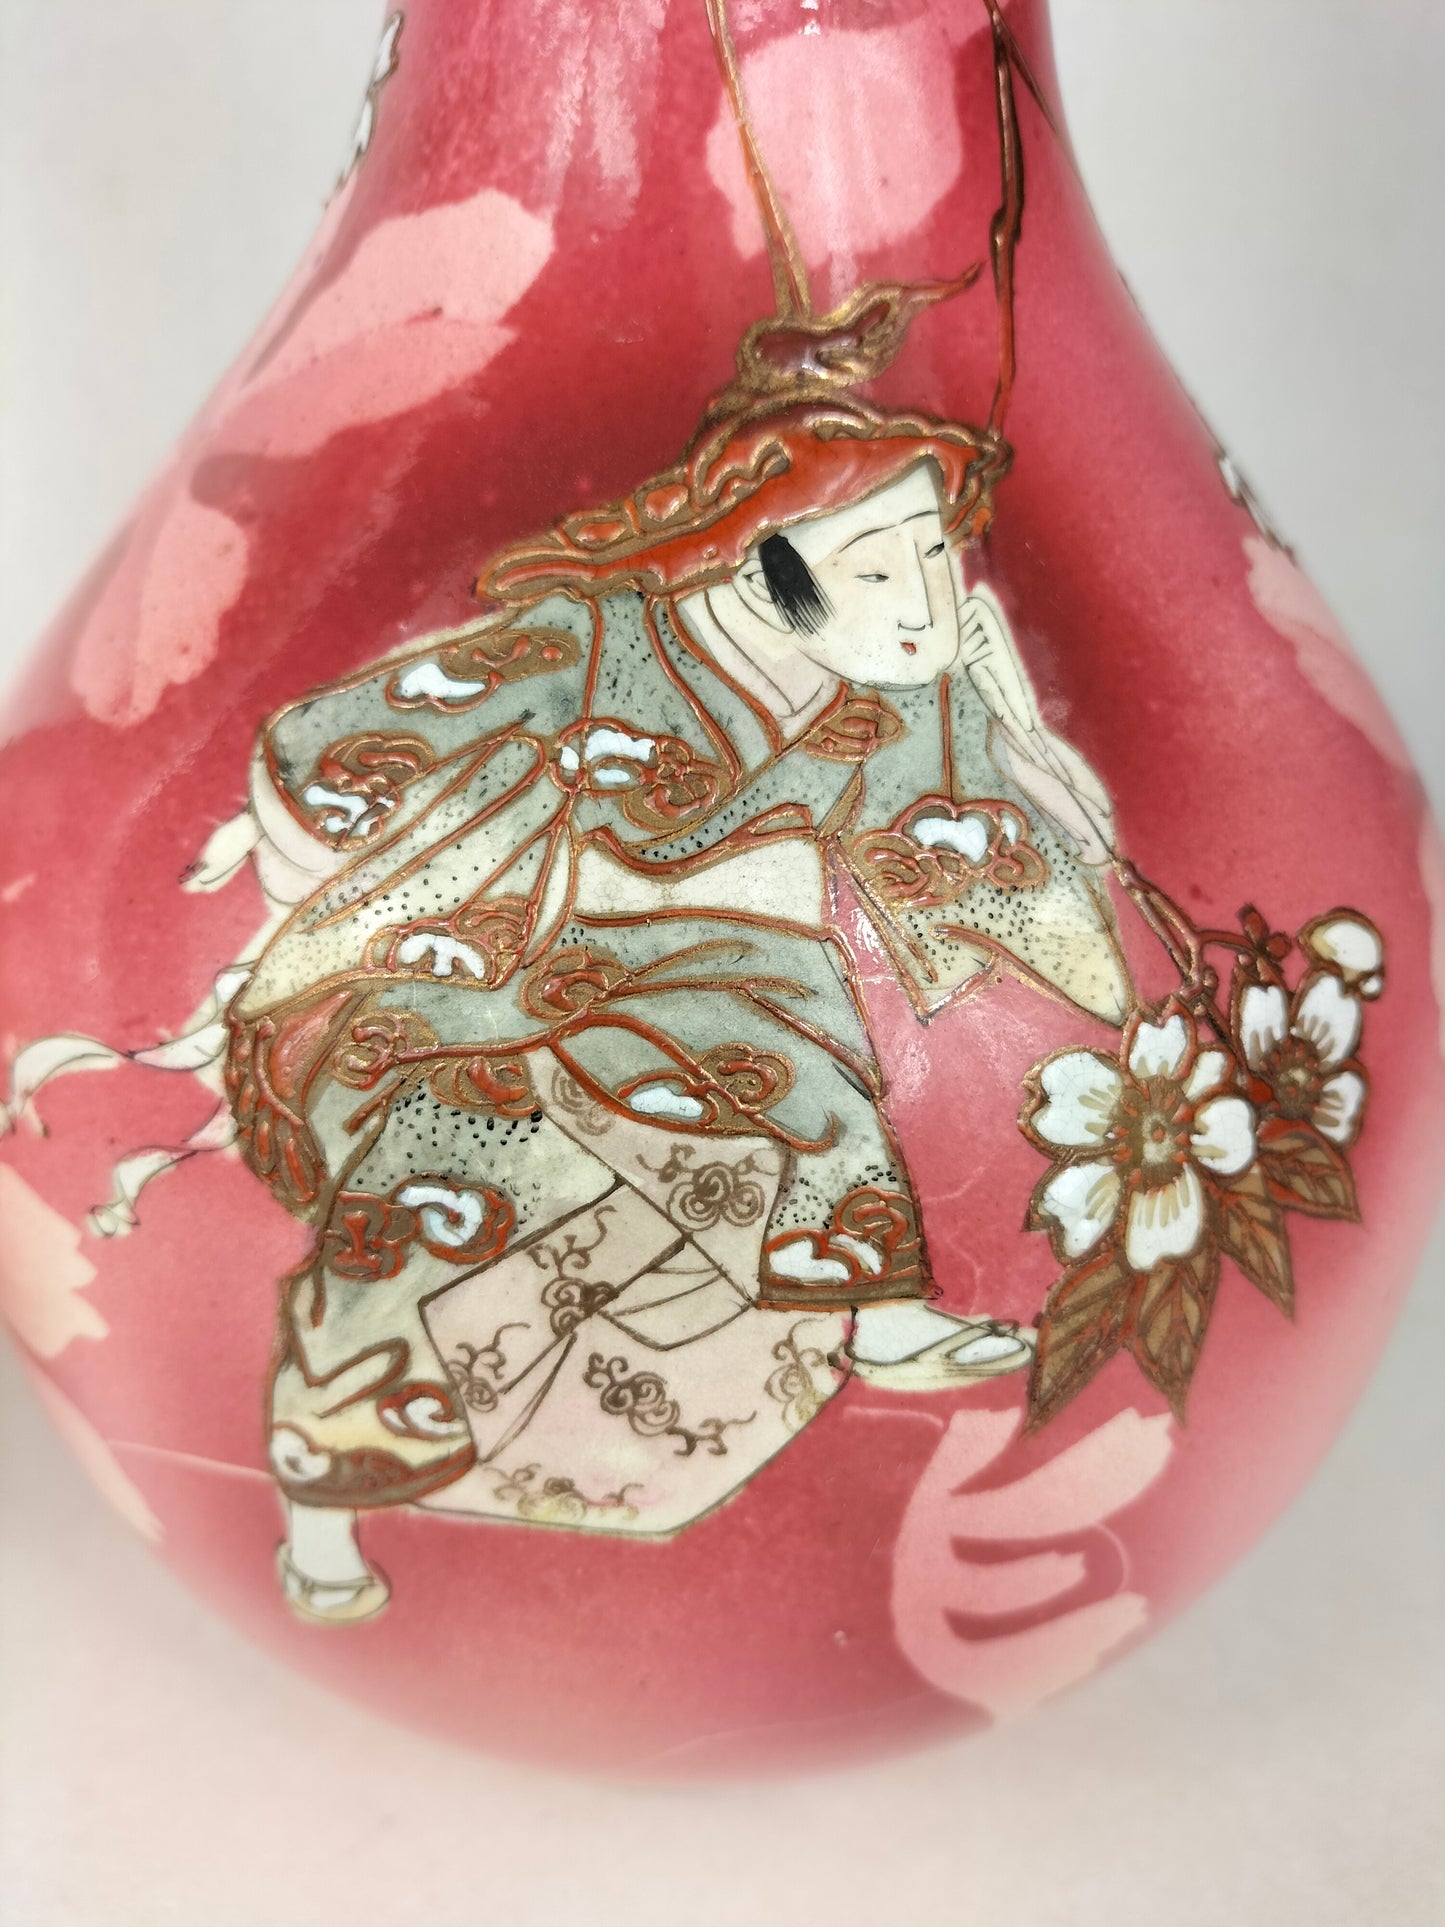 زوج من مزهريات ساتسوما اليابانية العتيقة الكبيرة المزينة بأشكال // أوائل القرن العشرين - فترة ميجي